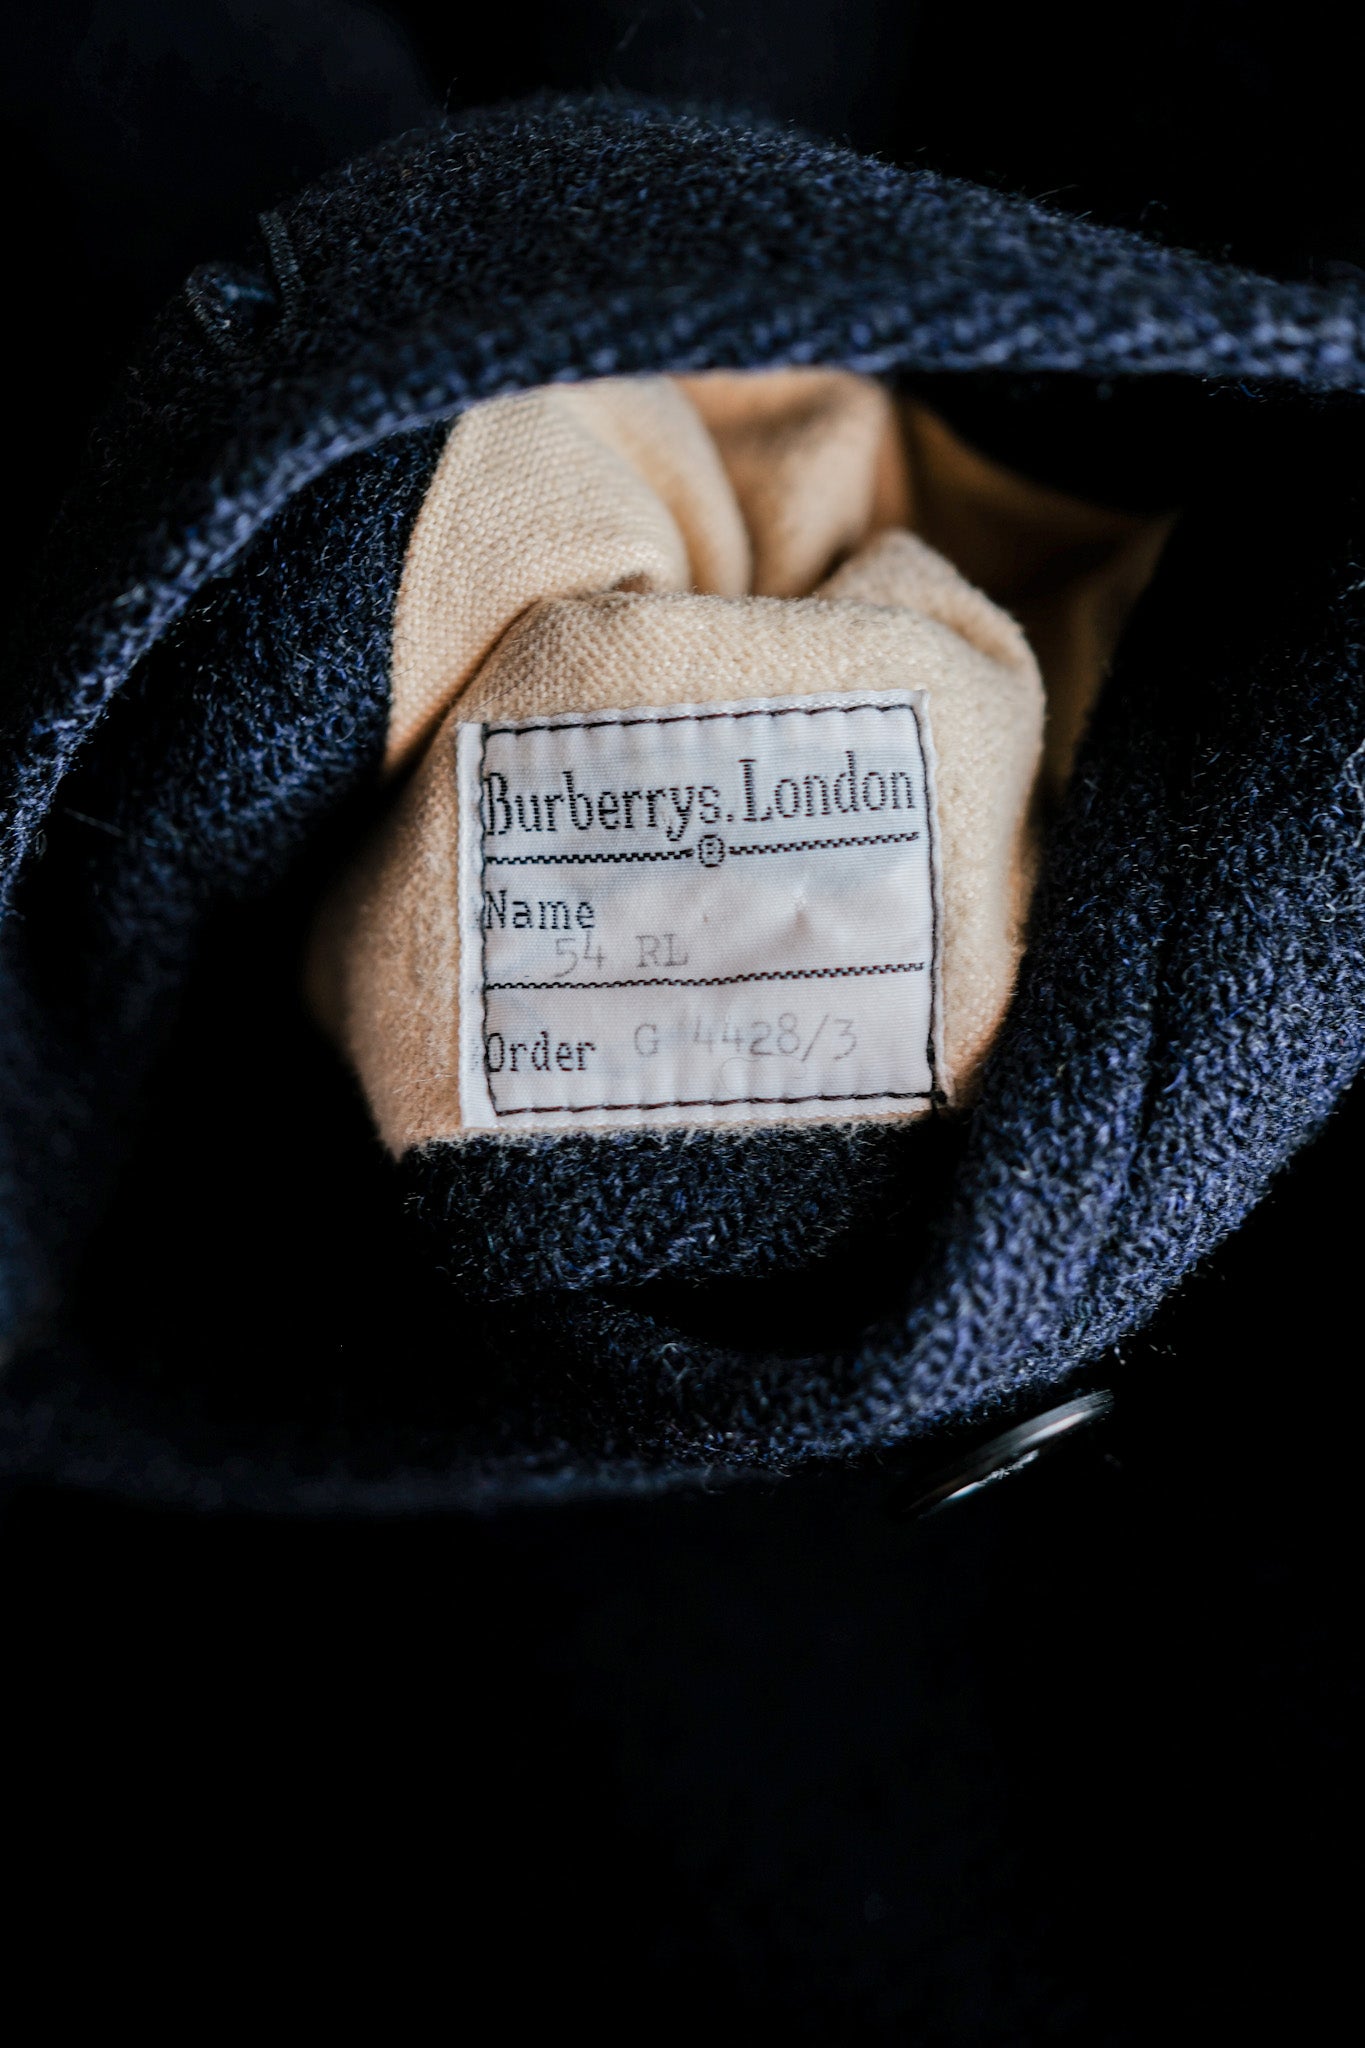 [〜80年代]復古burberrys單raglan羊毛balmacaan外套的尺寸。54rl“ harris tweed”“卡夫式定製筆記”